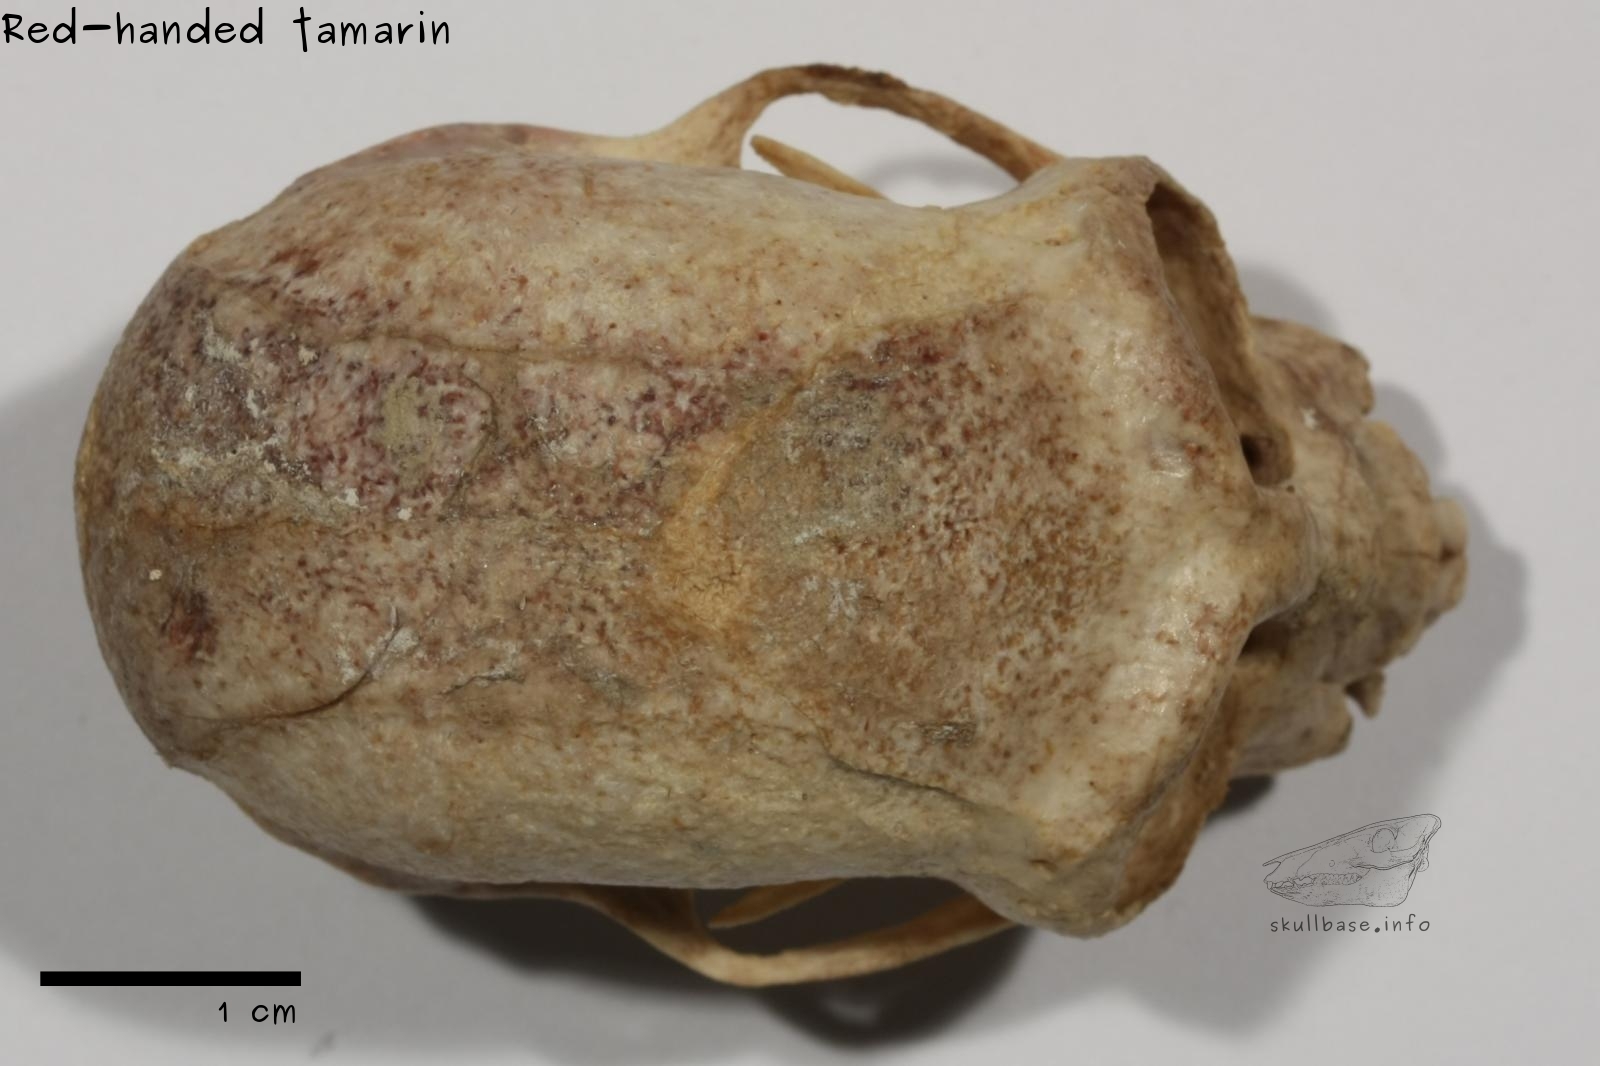 Red-handed tamarin (Saguinus midas) skull dorsal view